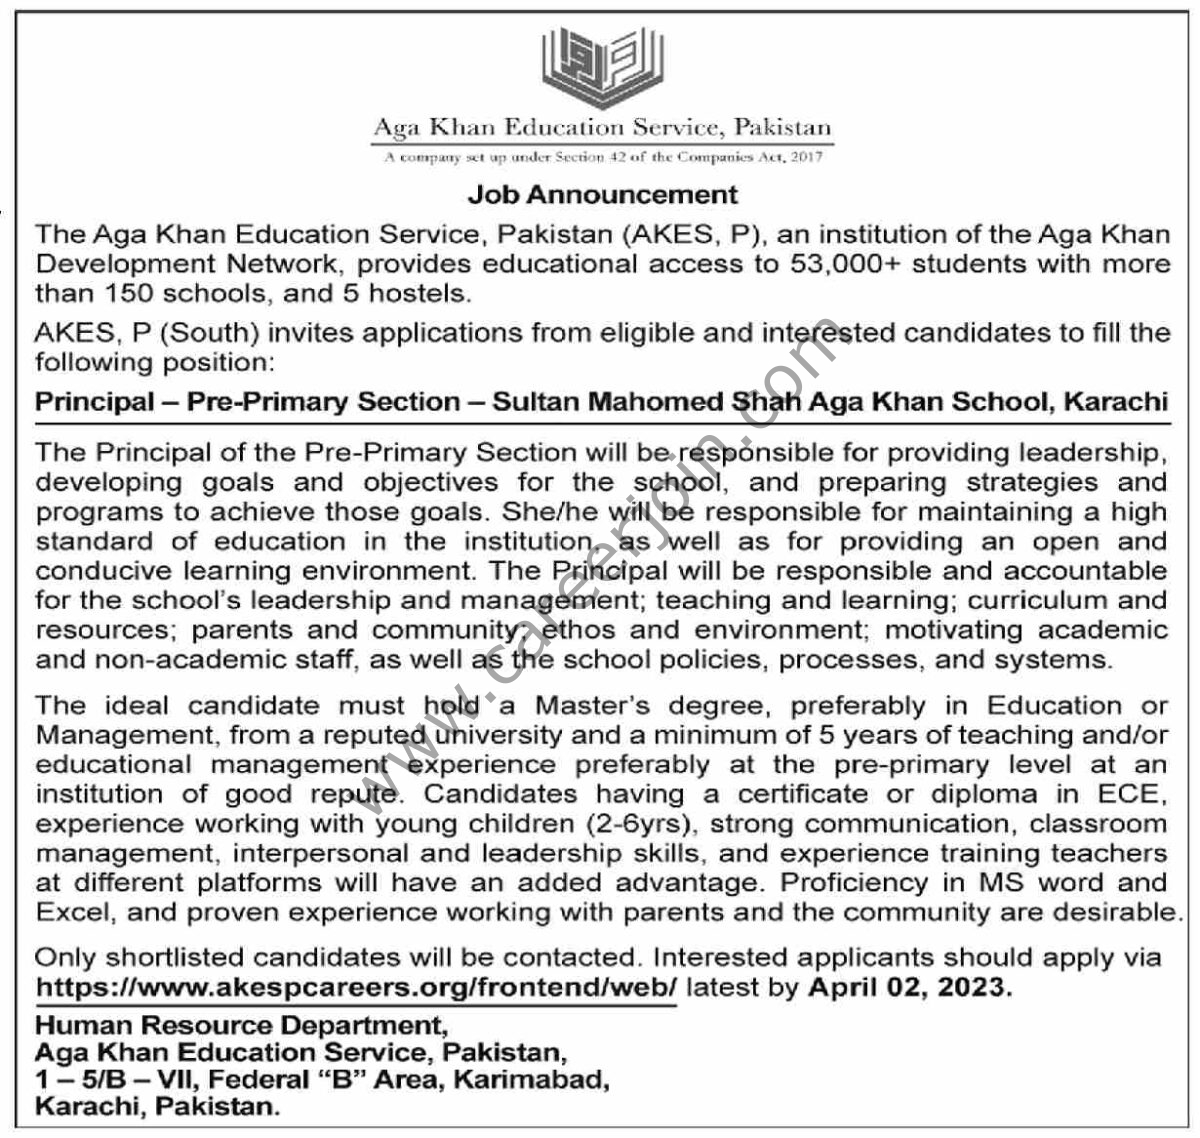 The Aga Khan Education Service Jobs 26 March 2023 Dawn 1